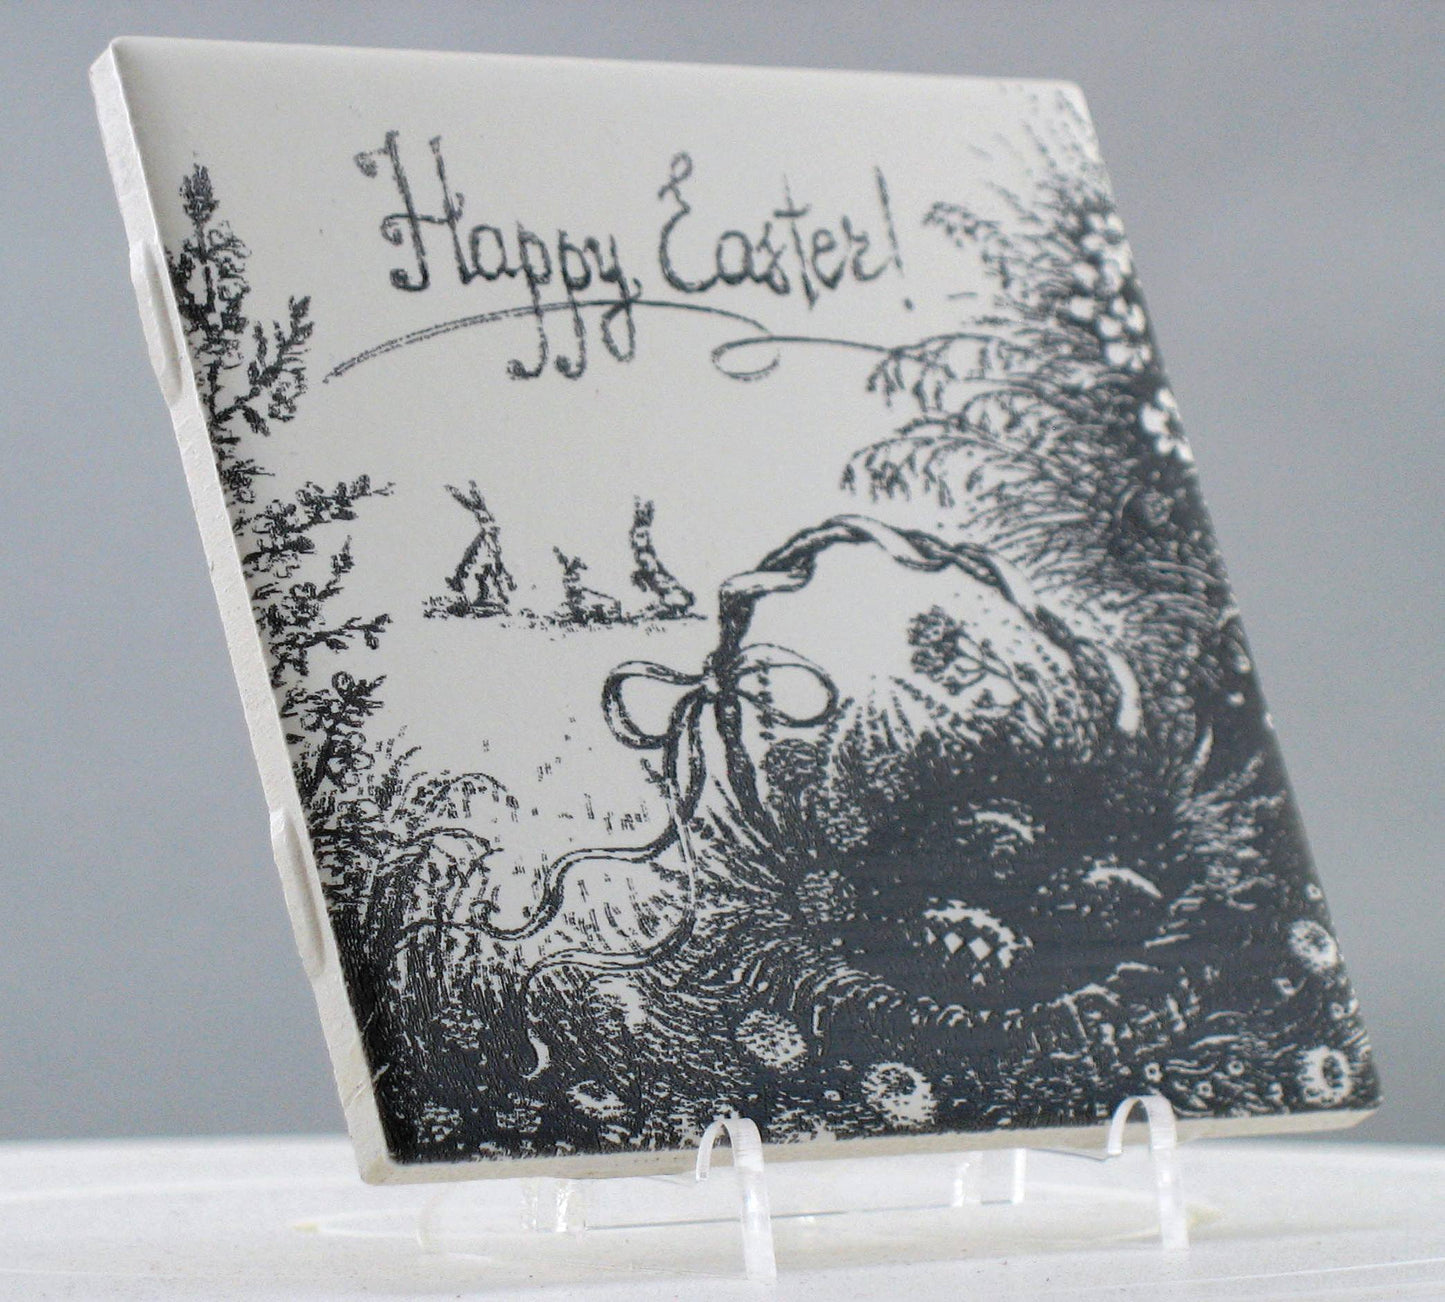 Happy Easter Engraving on Laser Ceramic Tile